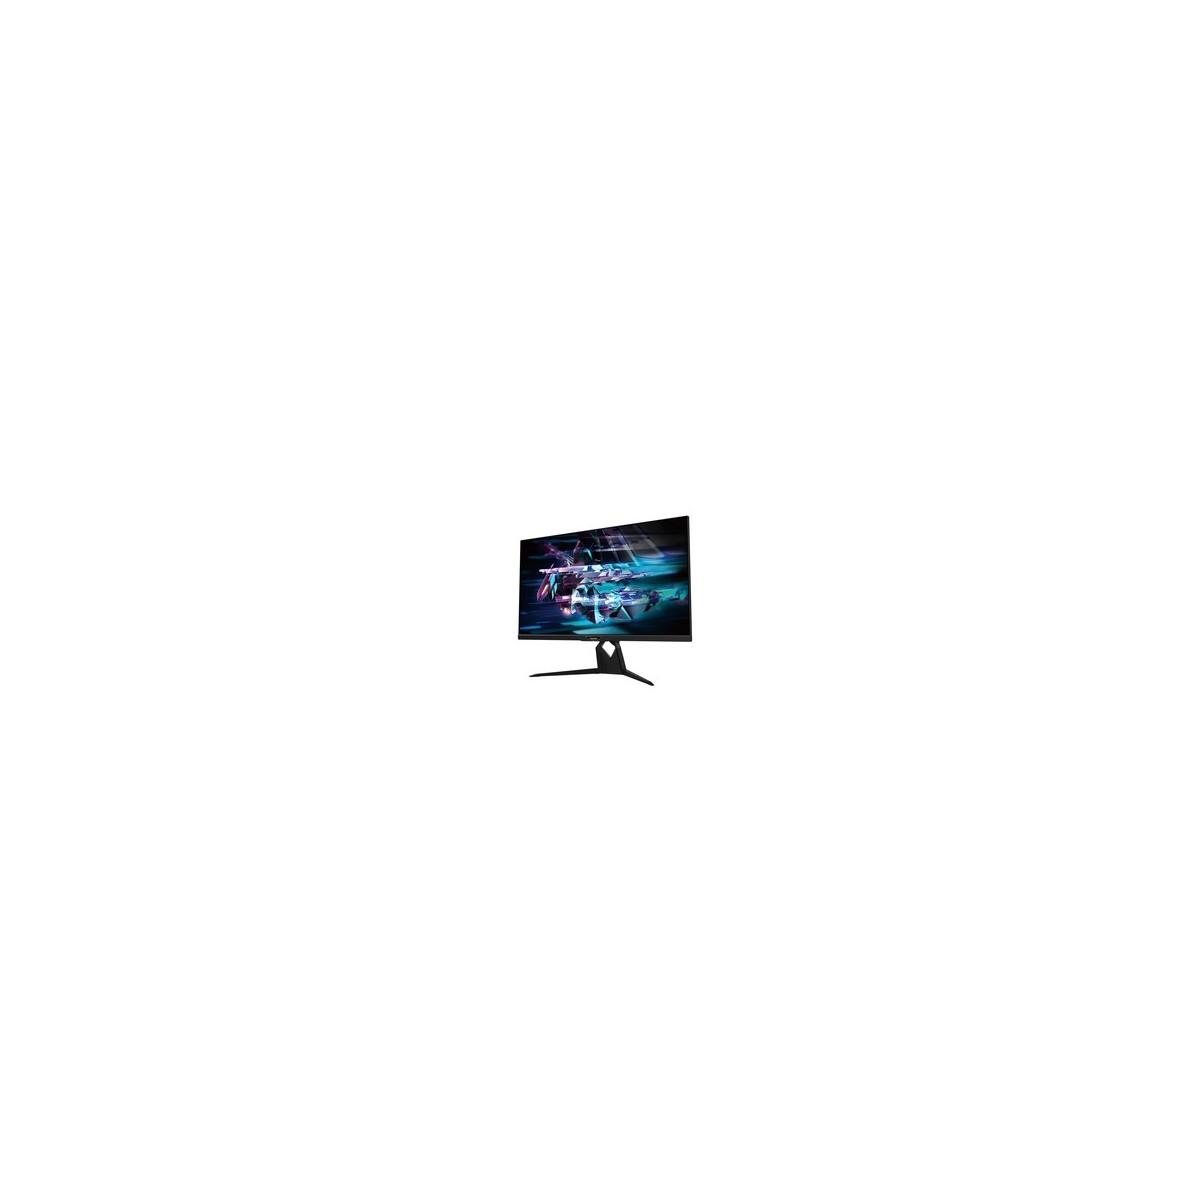 GIGABYTE LCD - 31.5 Gaming monitor AORUS FI32U UHD, 3840 x 2160, 144Hz, 1000:1, 350cd-m2, 1ms, 2xHDMI 2.1, 1xDP, SS IPS